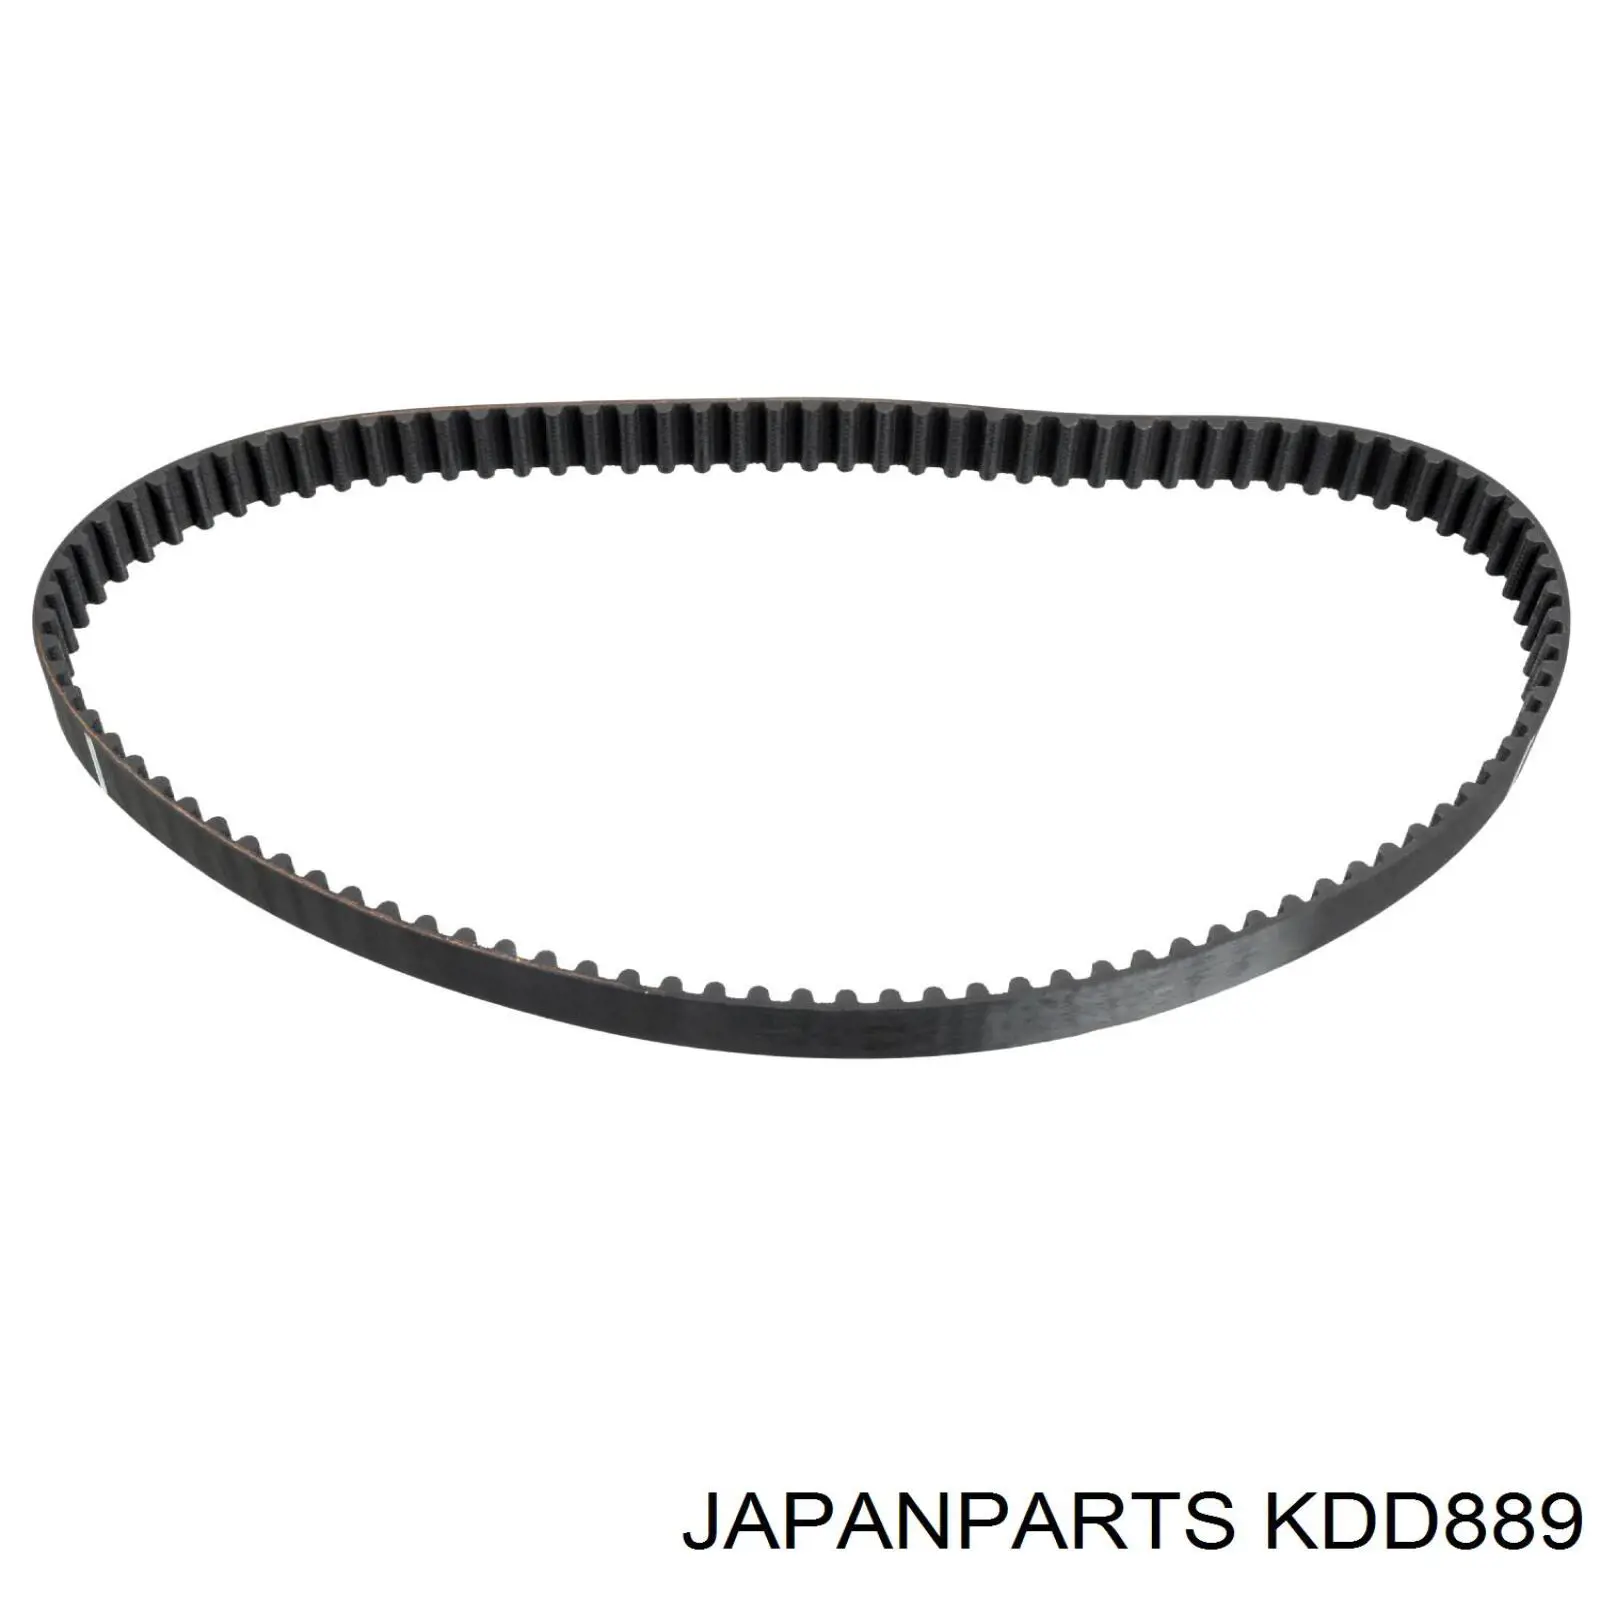 KDD889 Japan Parts kit de correa de distribución